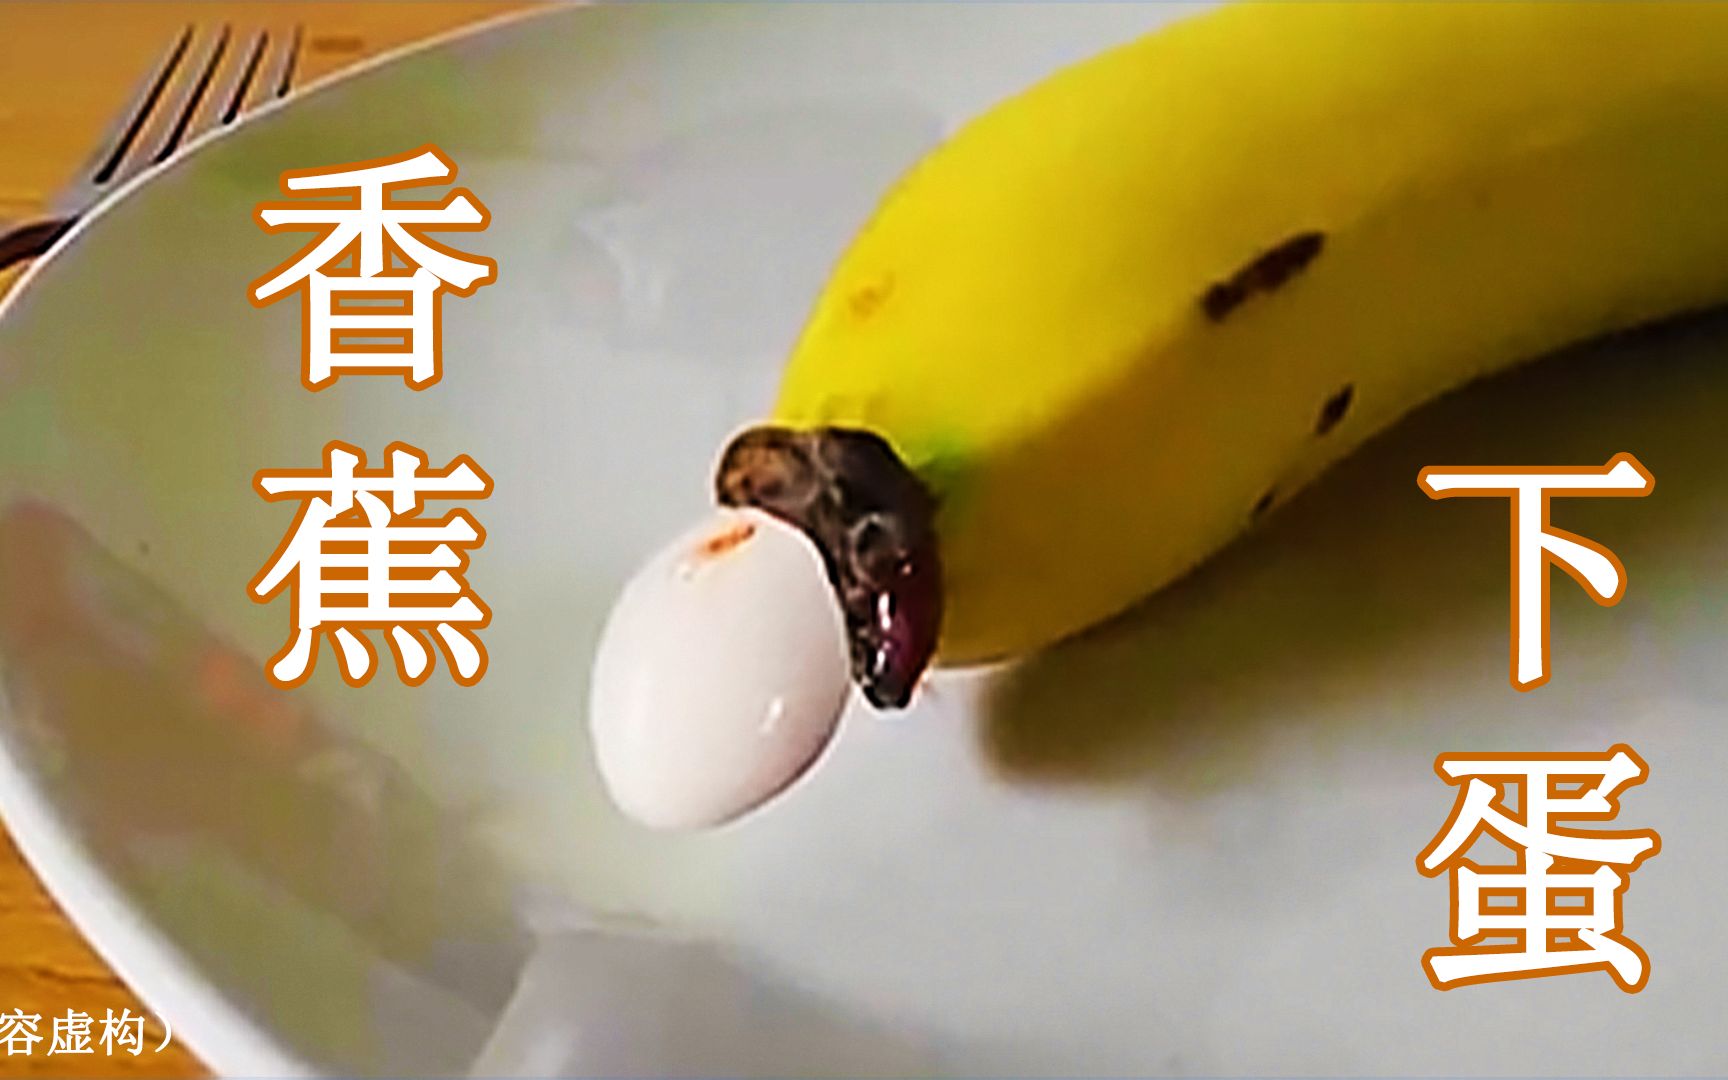 第一次见这么奇葩的视频，香蕉竟然下了一个鸟蛋，假吃系列